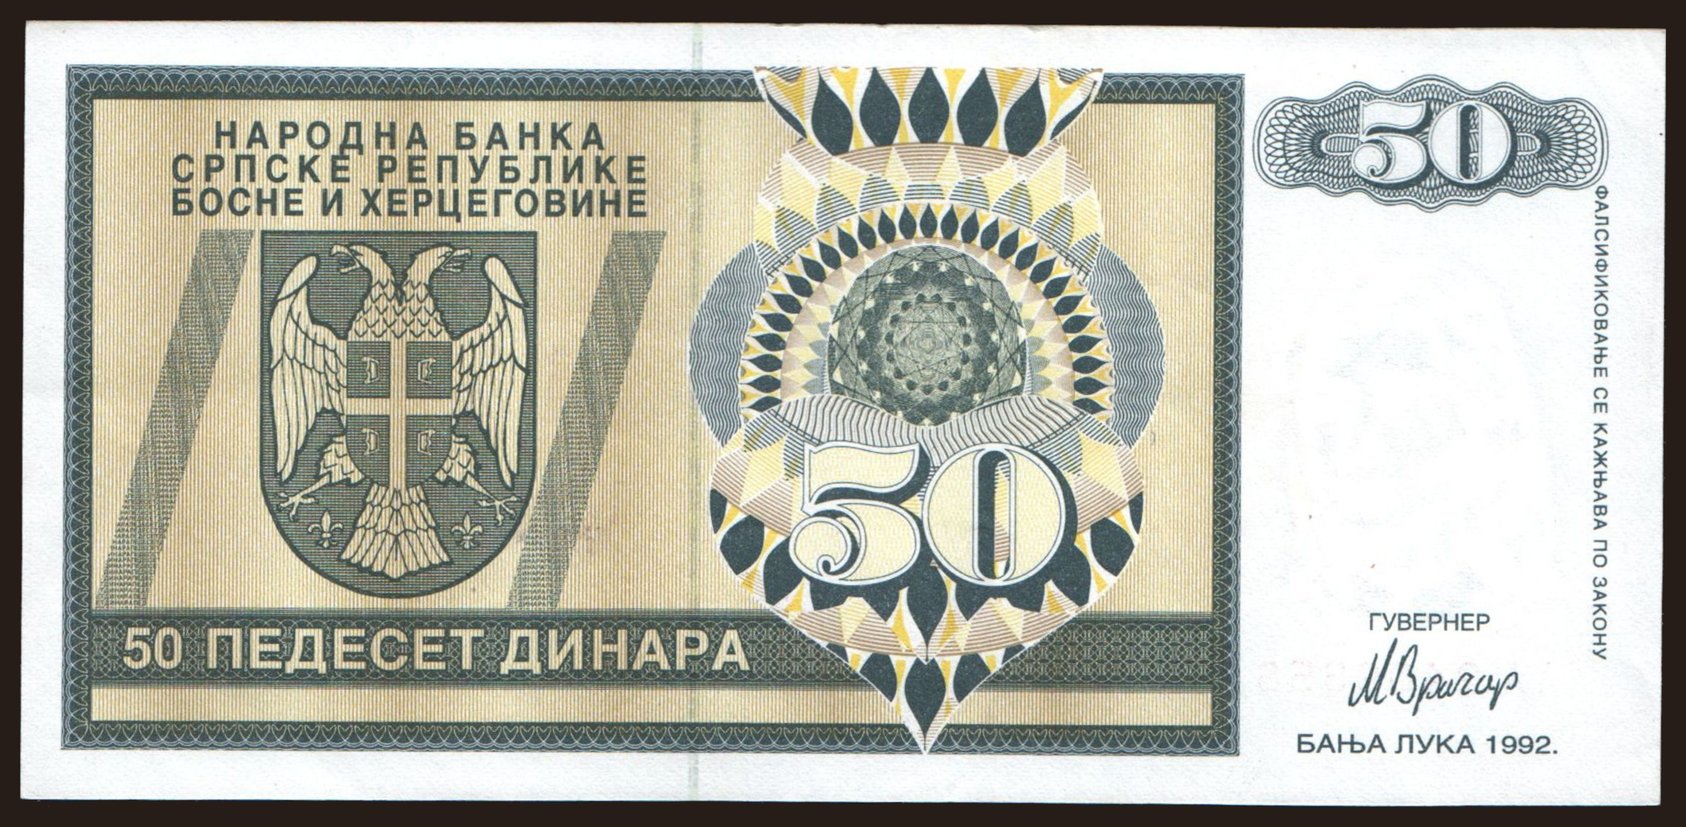 RSBH, 50 dinara, 1992